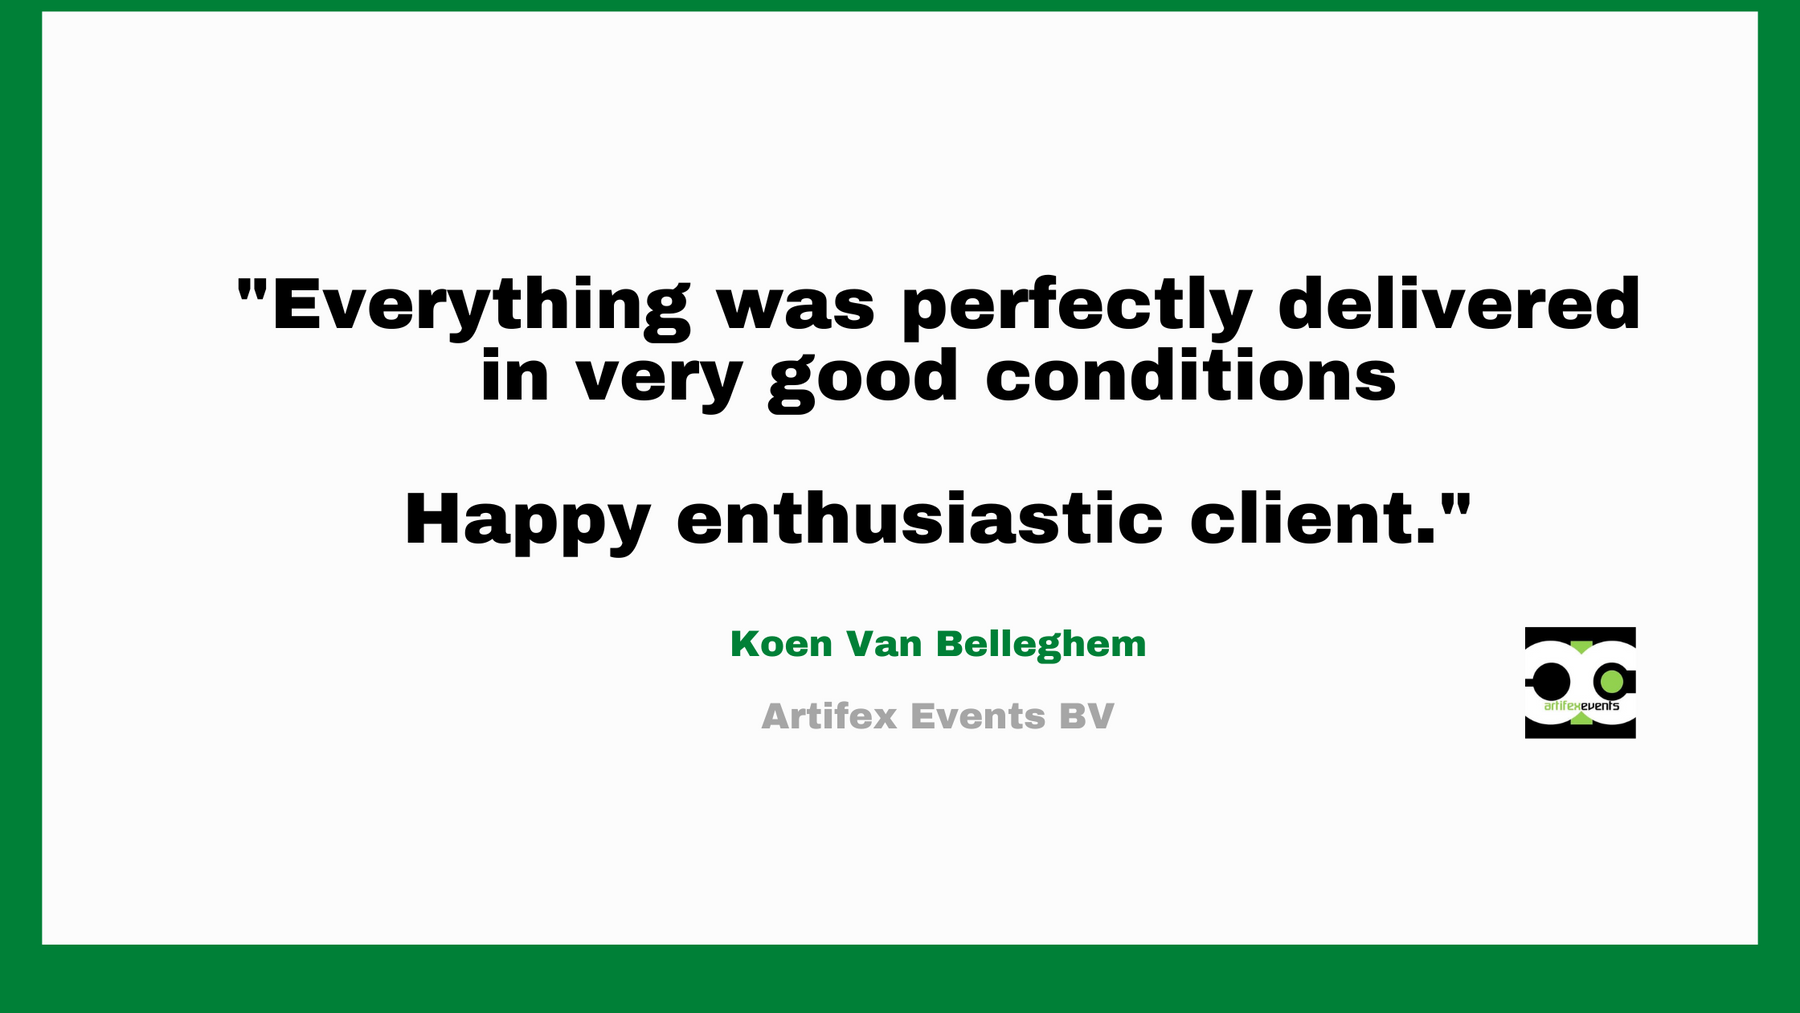 Thank you Koen Van Belleghem!